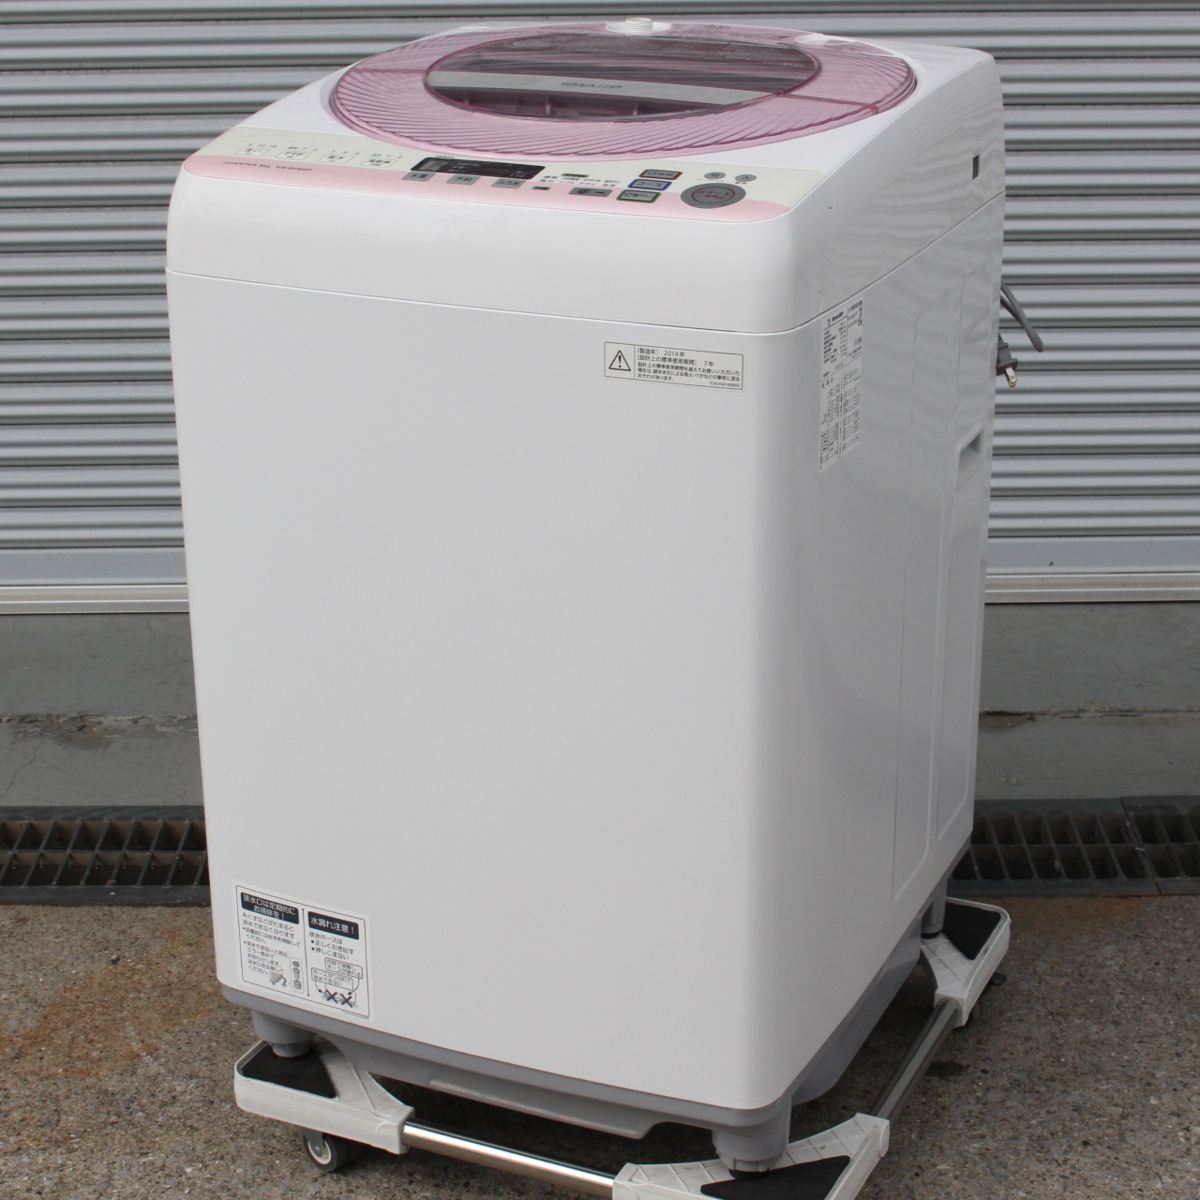 東京都杉並区にて シャープ 洗濯機 ES-GV80P 2014年製 を出張買取させて頂きました。